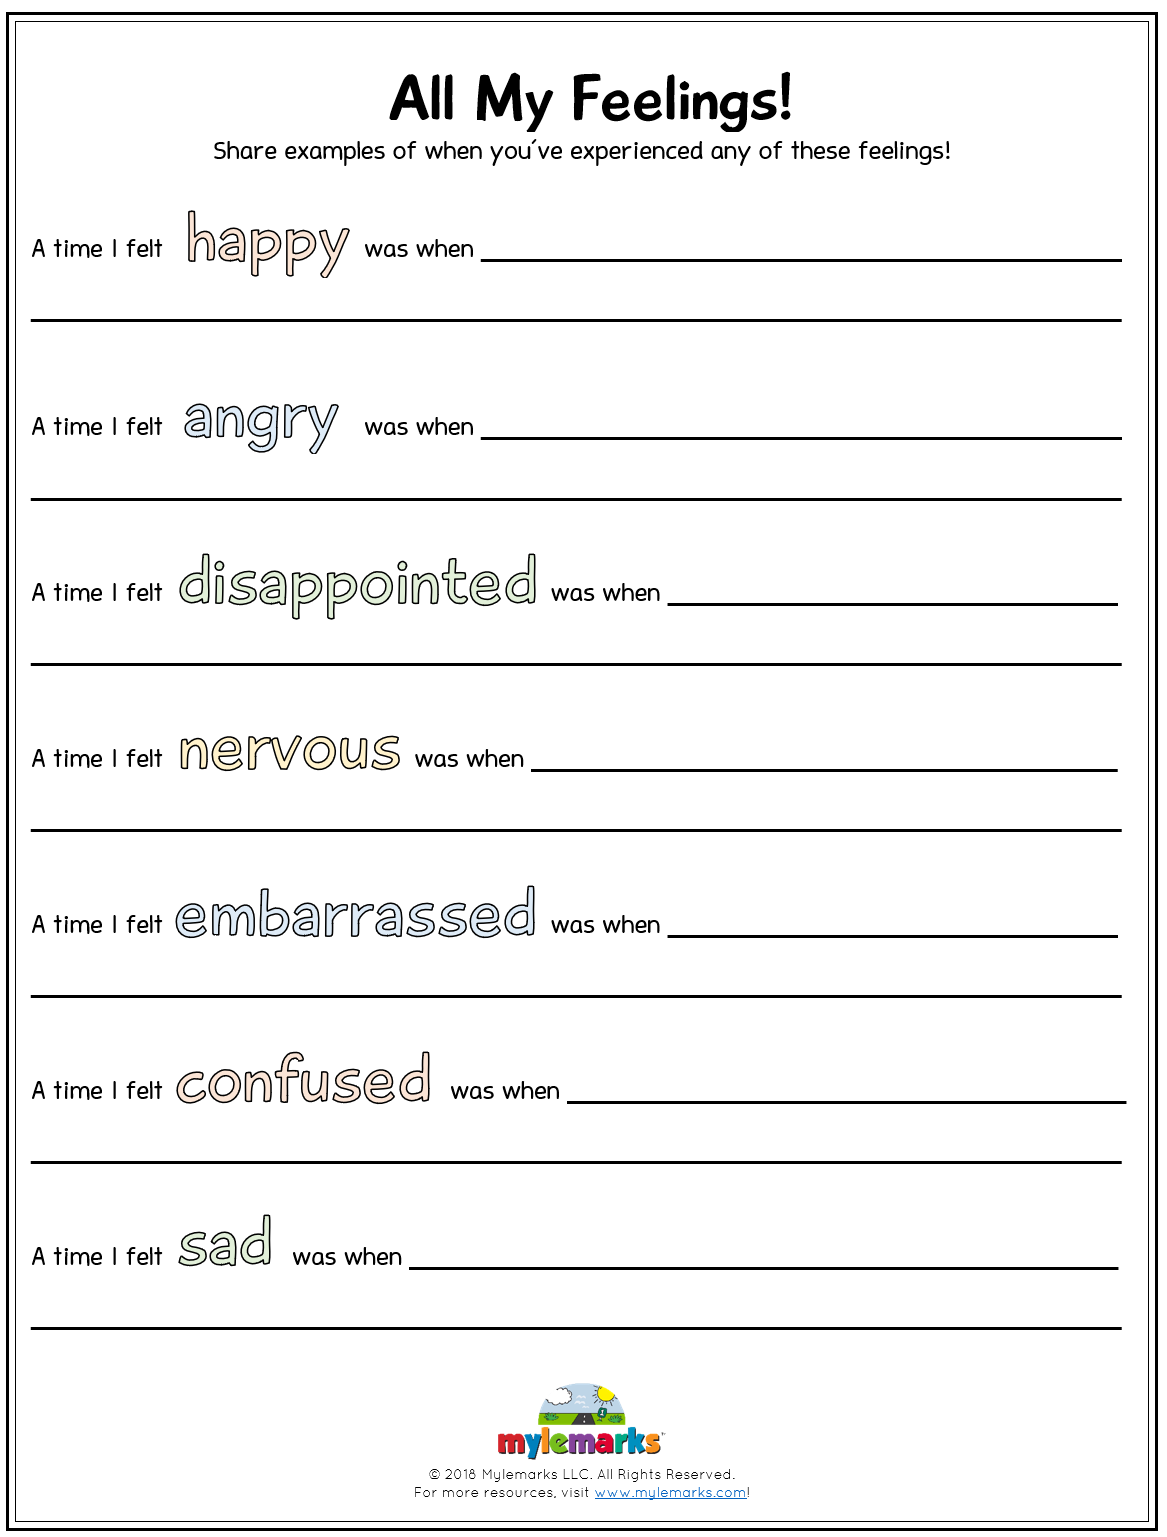 managing-emotions-worksheets